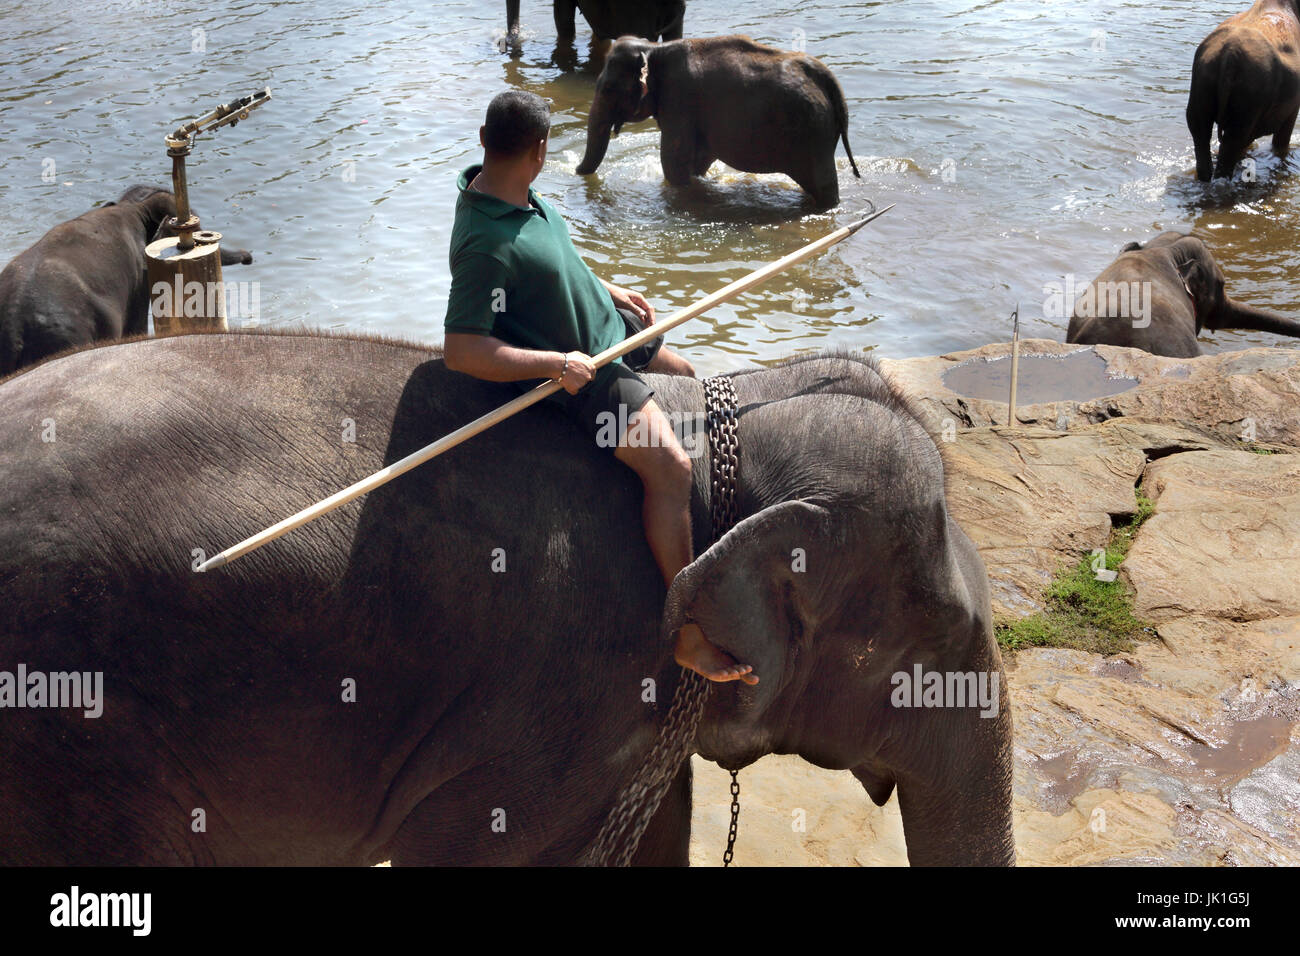 Pinnawala Central Province Sri Lanka Pinnawala Elephant Orphanage keeper riding elephant by Ma Oya River Stock Photo